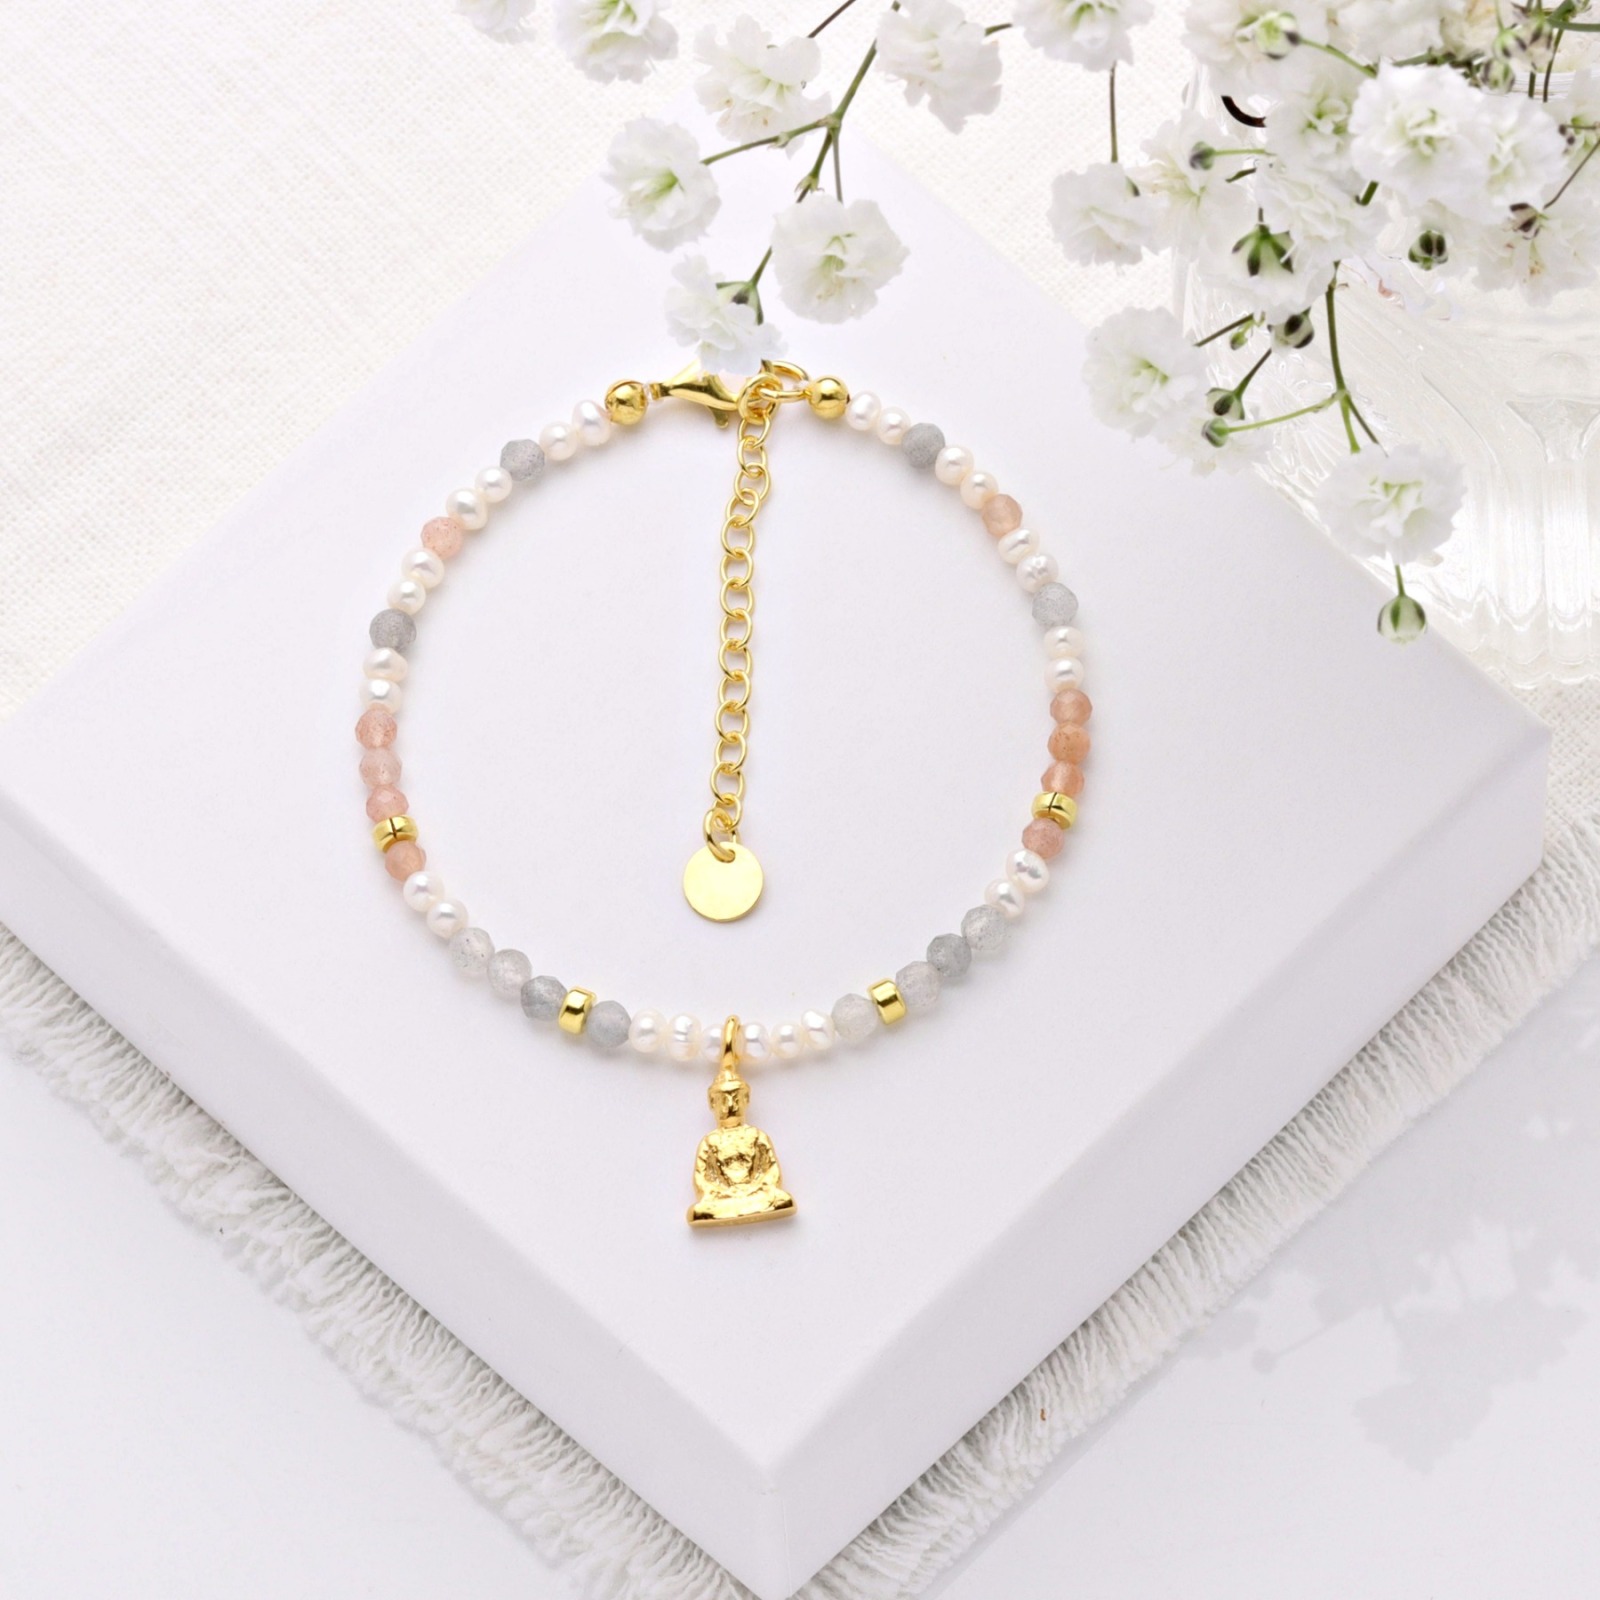 Filigranes Armband aus Mondstein und echten Perlen mit einem kleinen Buddha Silber oder Gold